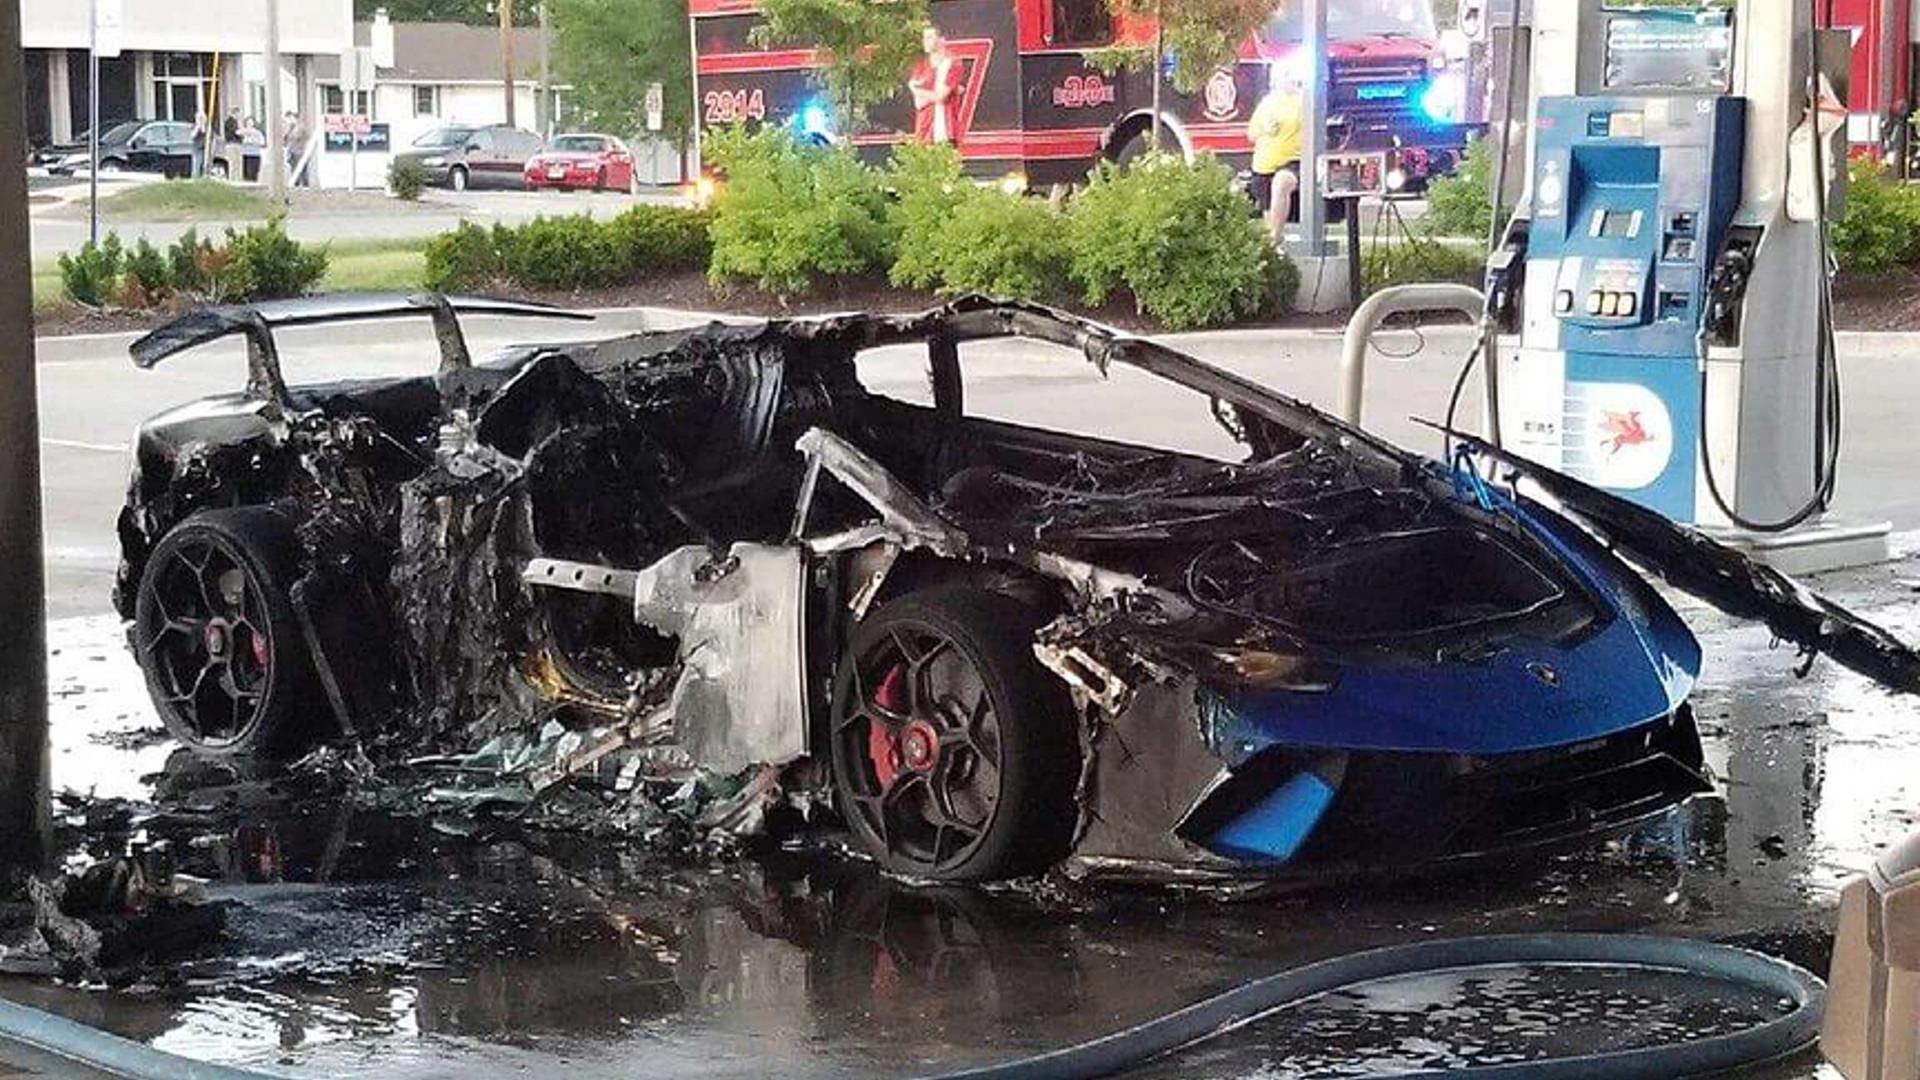 Ze zánovního Lamborghini Huracán Performante zbyla jen ohořelá kostra